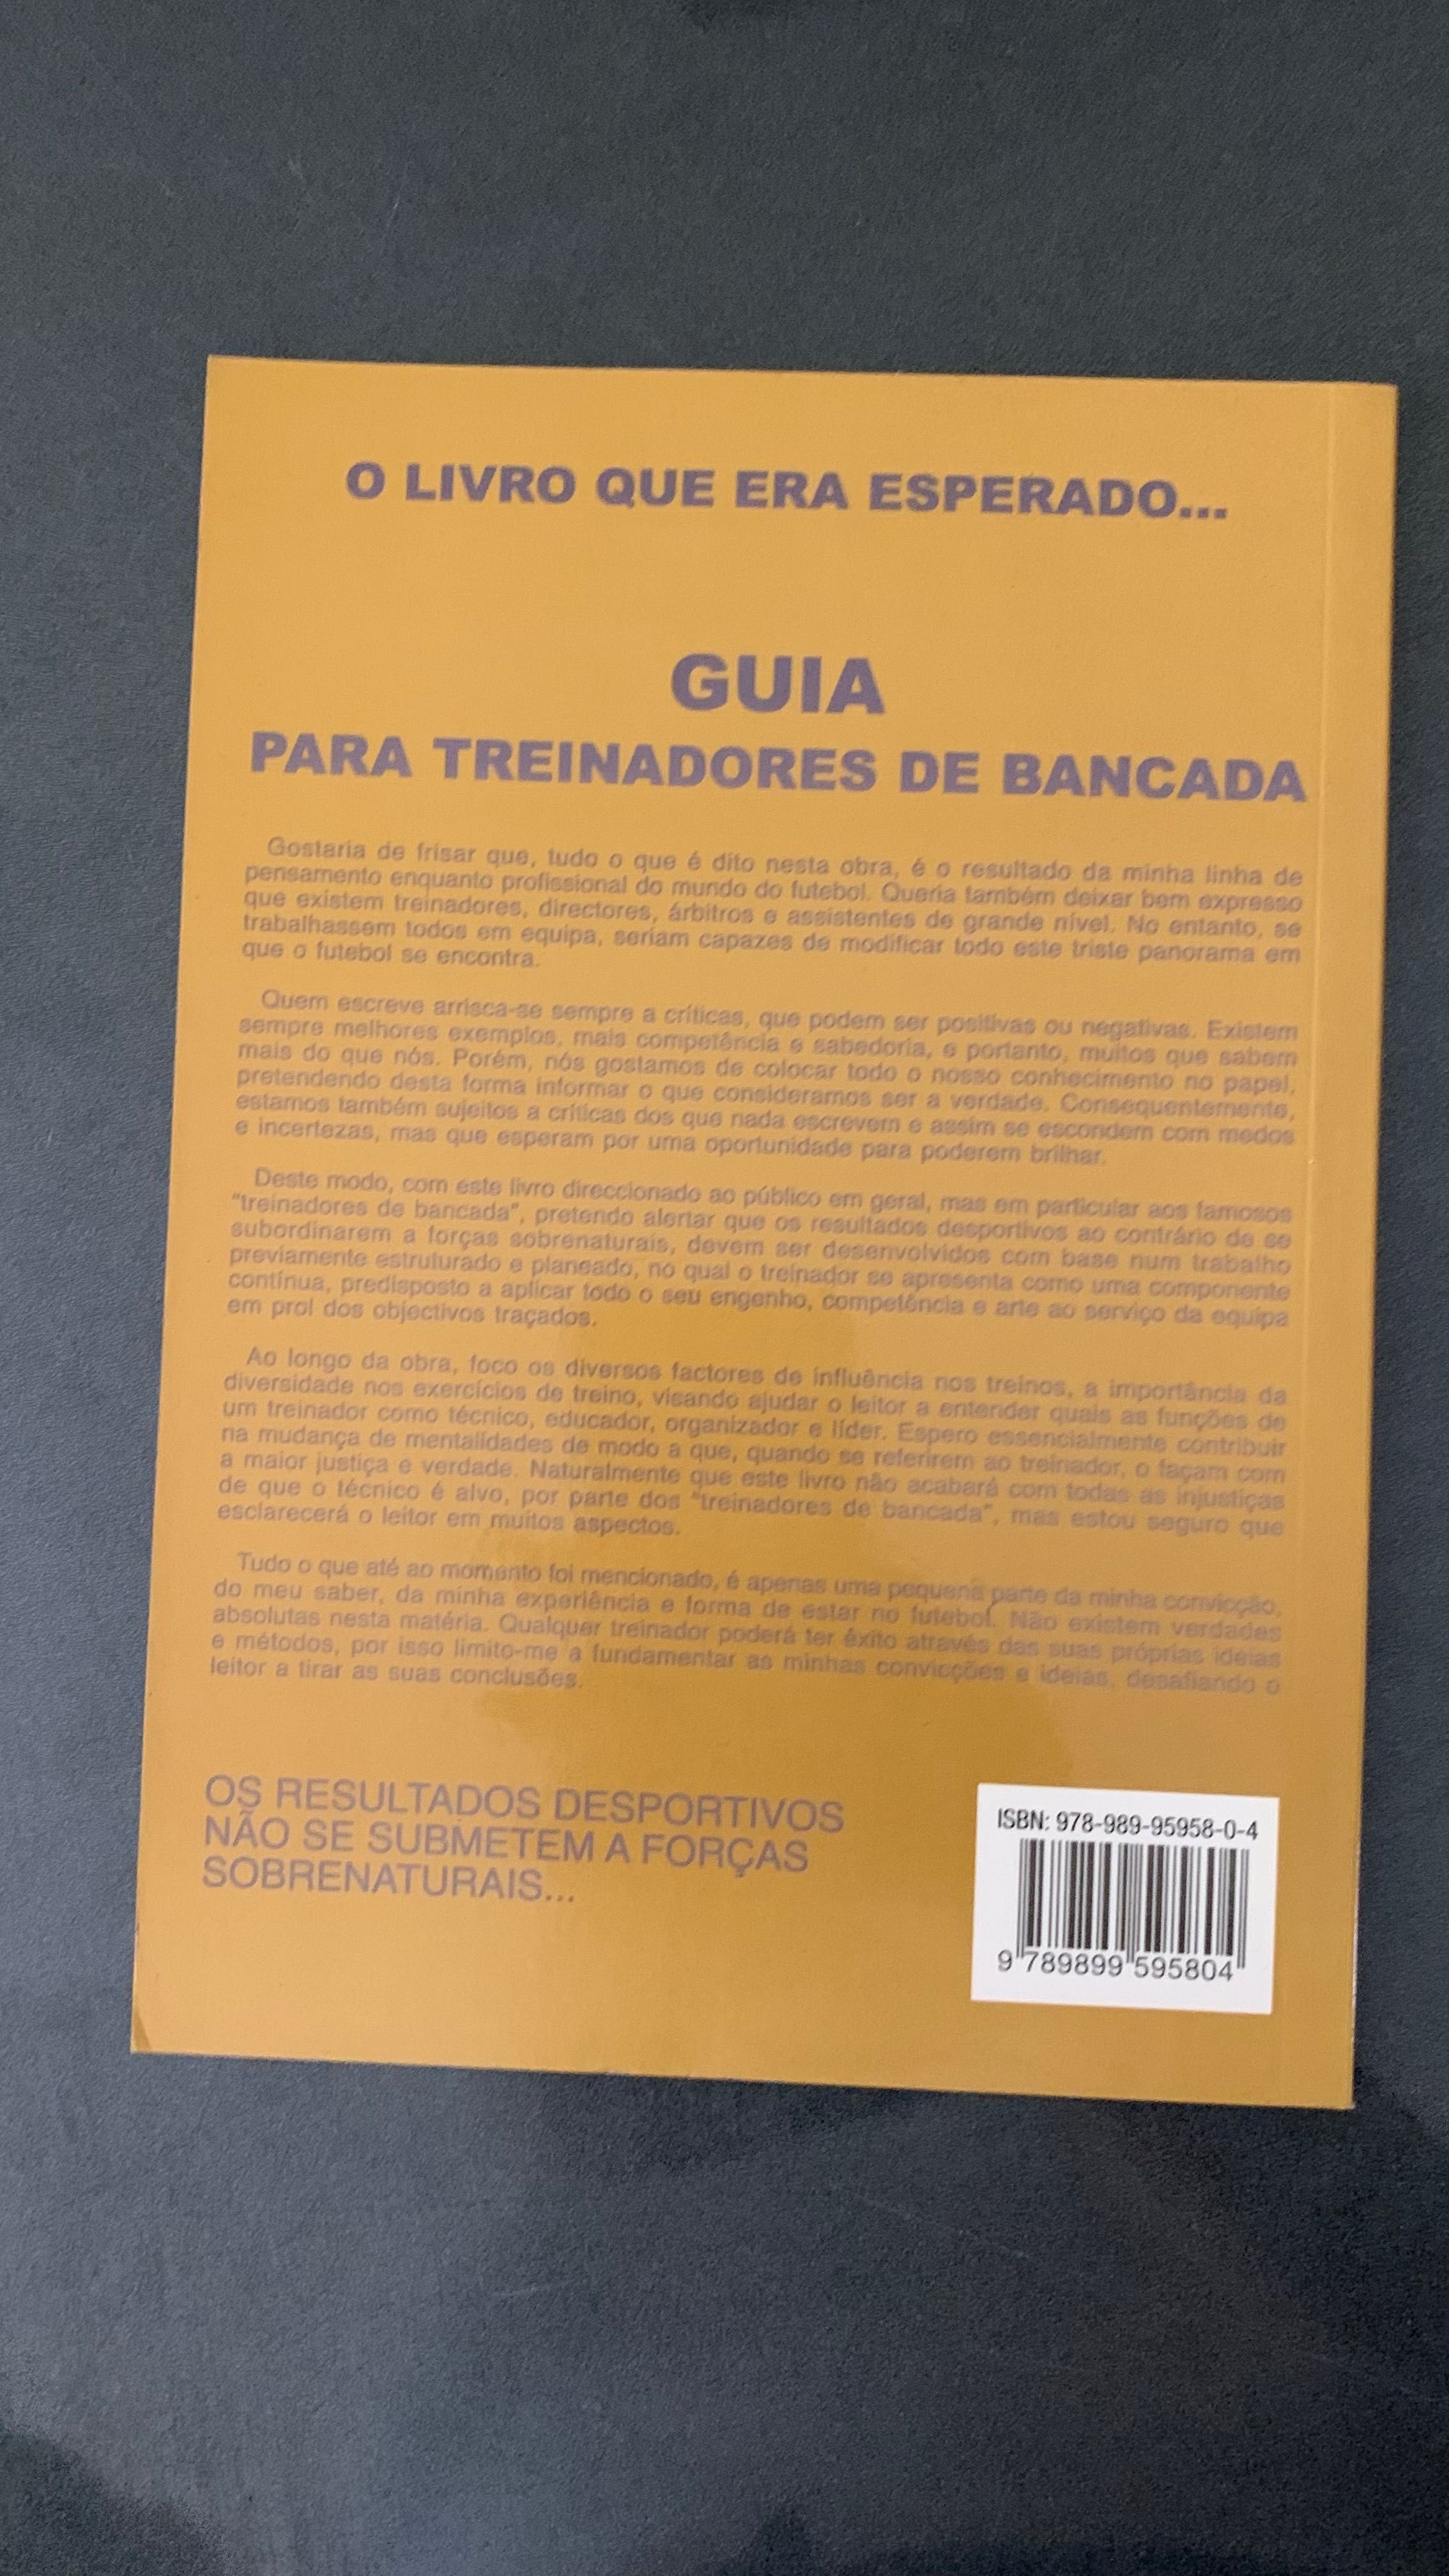 Livro “Futebol - Guia para treinadores de bancada” de José Ferraz